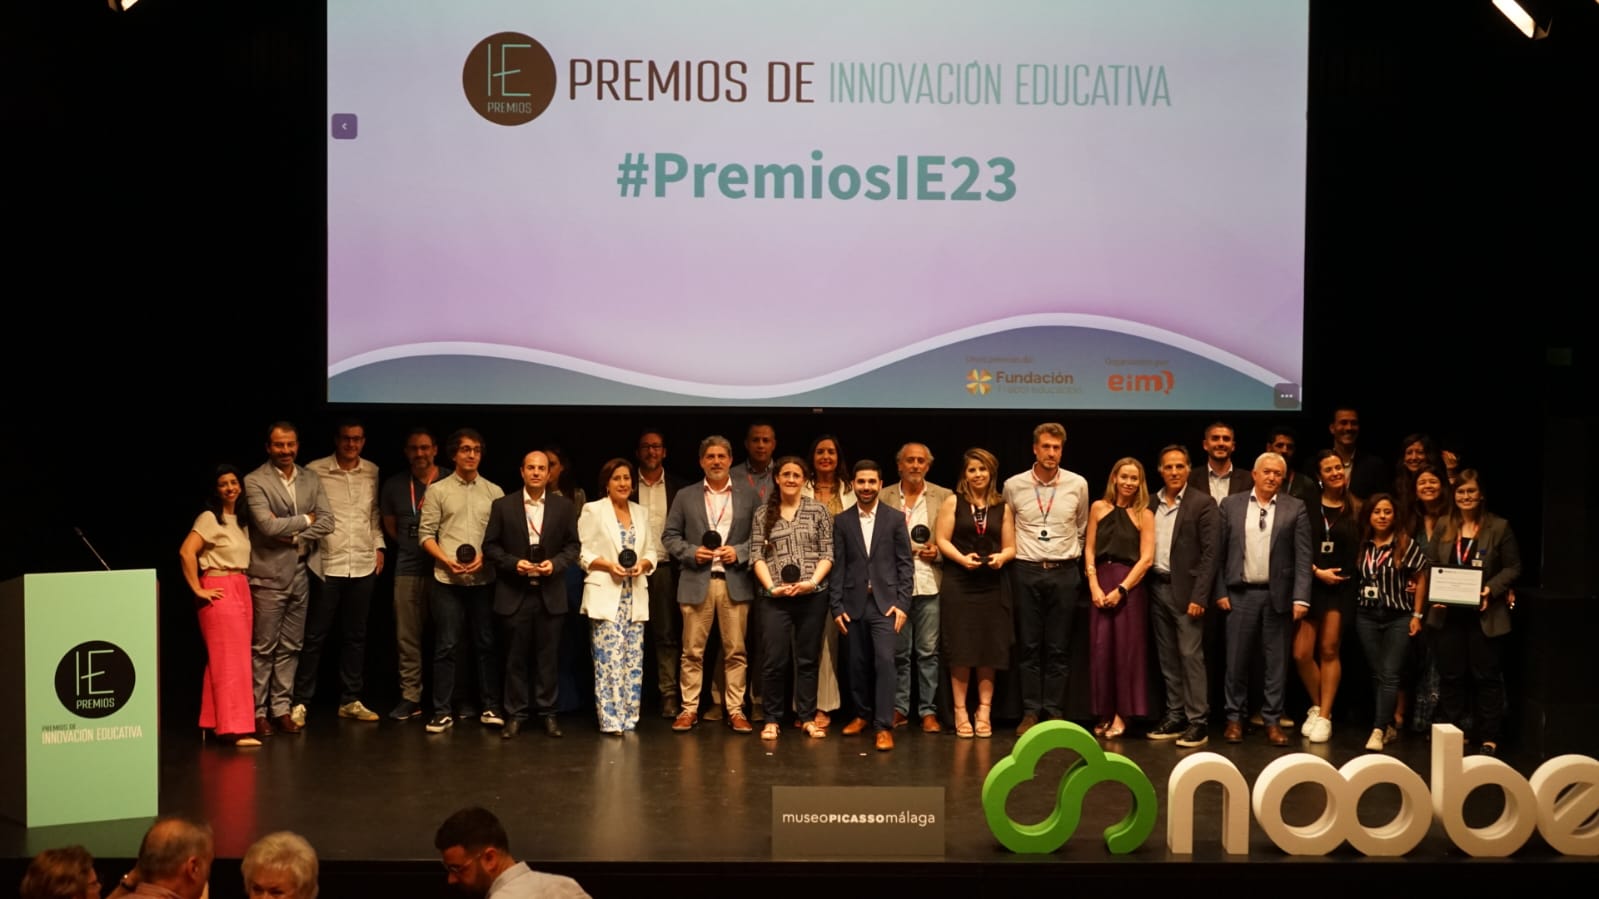 Grupo Trébol Educación - Premios Innovación Educativa - Pasedeprensa Gabinete de Prensa